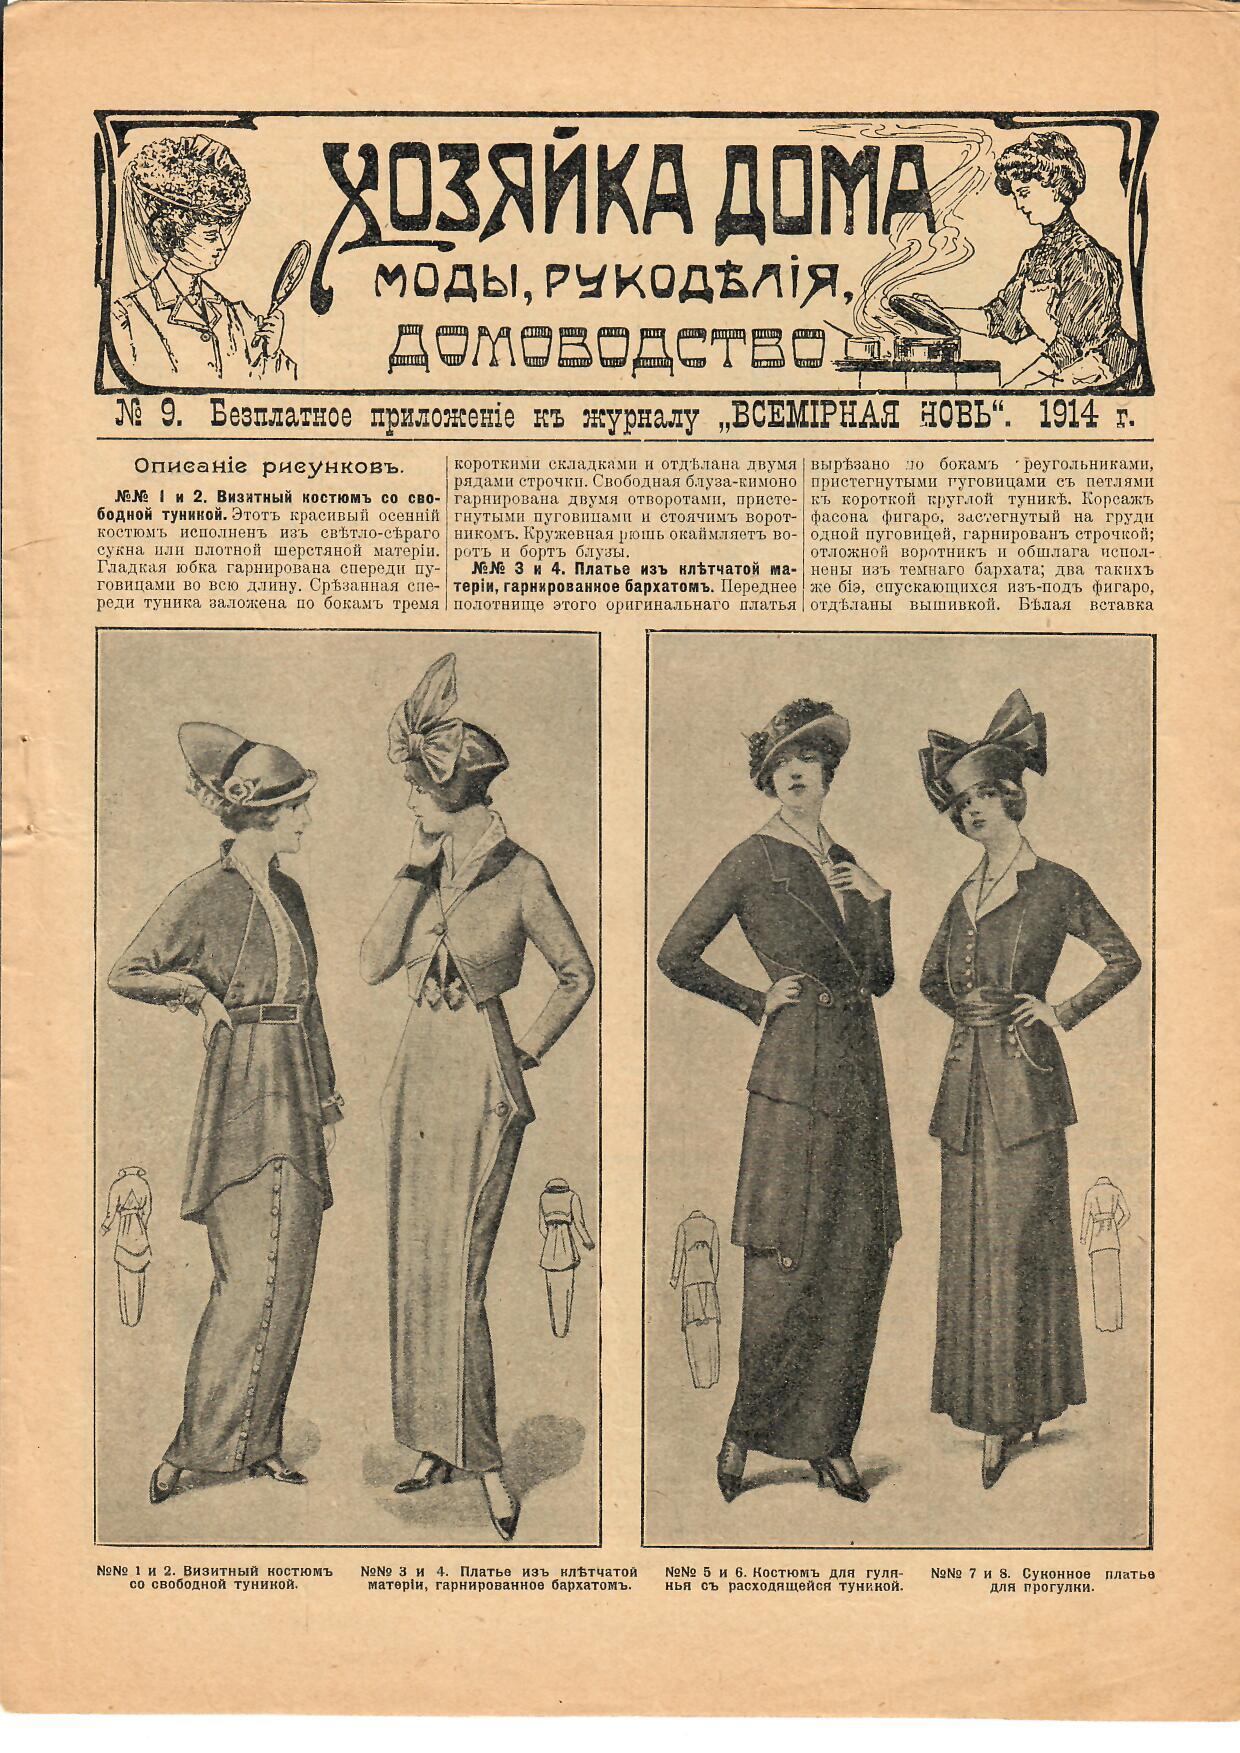 Мода прошлого века: газета 1914 года.